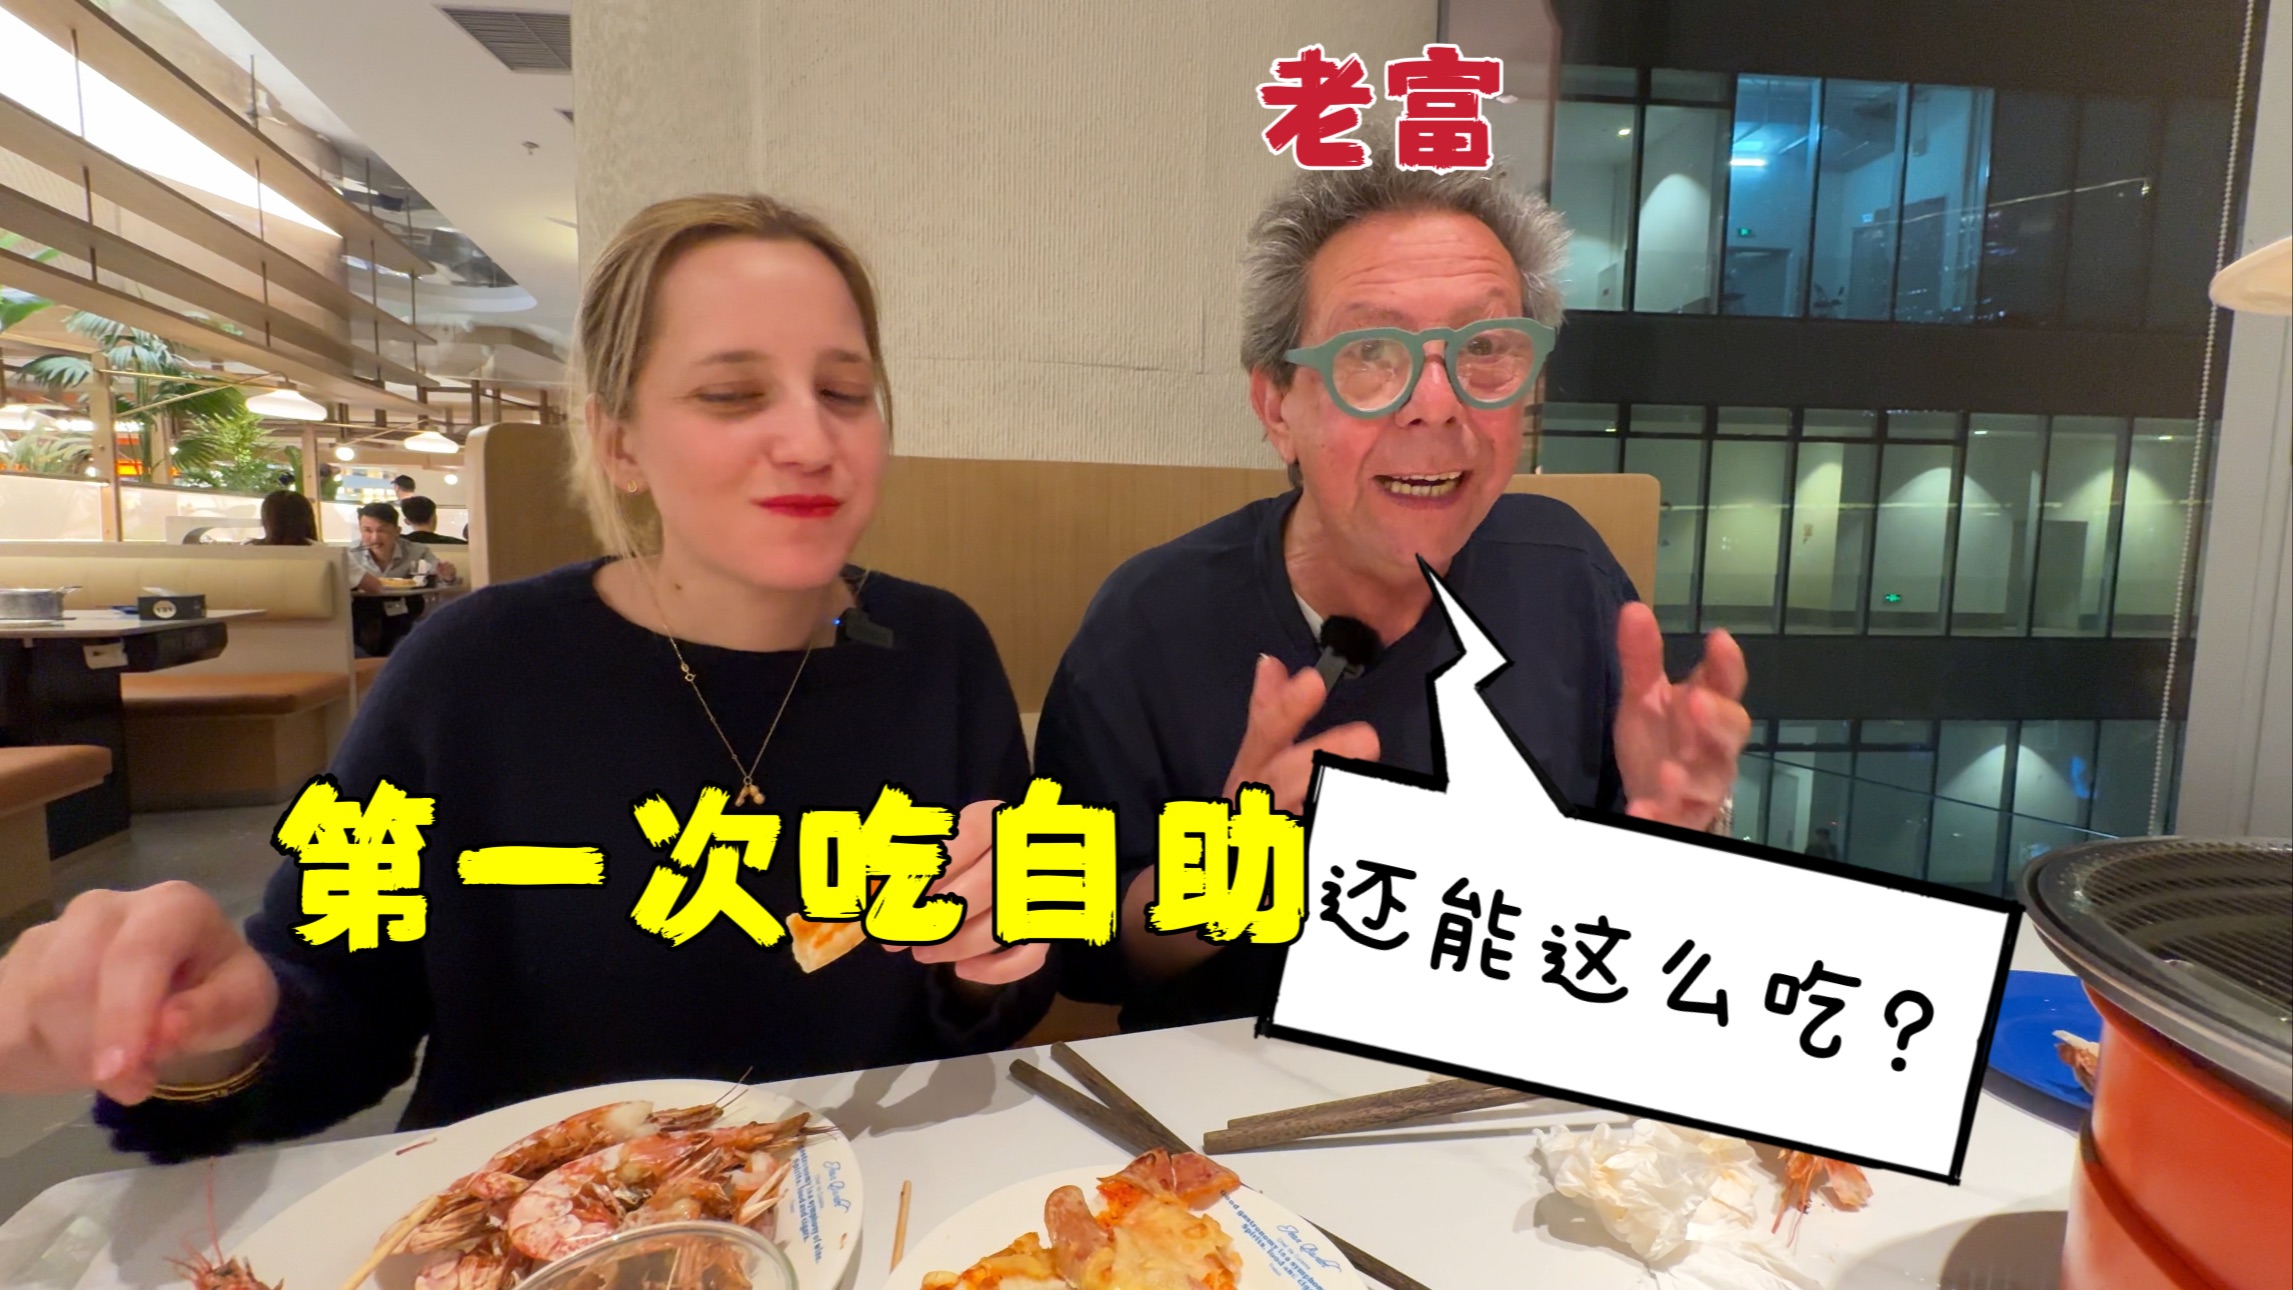 意大利老爸在中国第一次吃自助餐,惊讶自助餐还能这样吃!